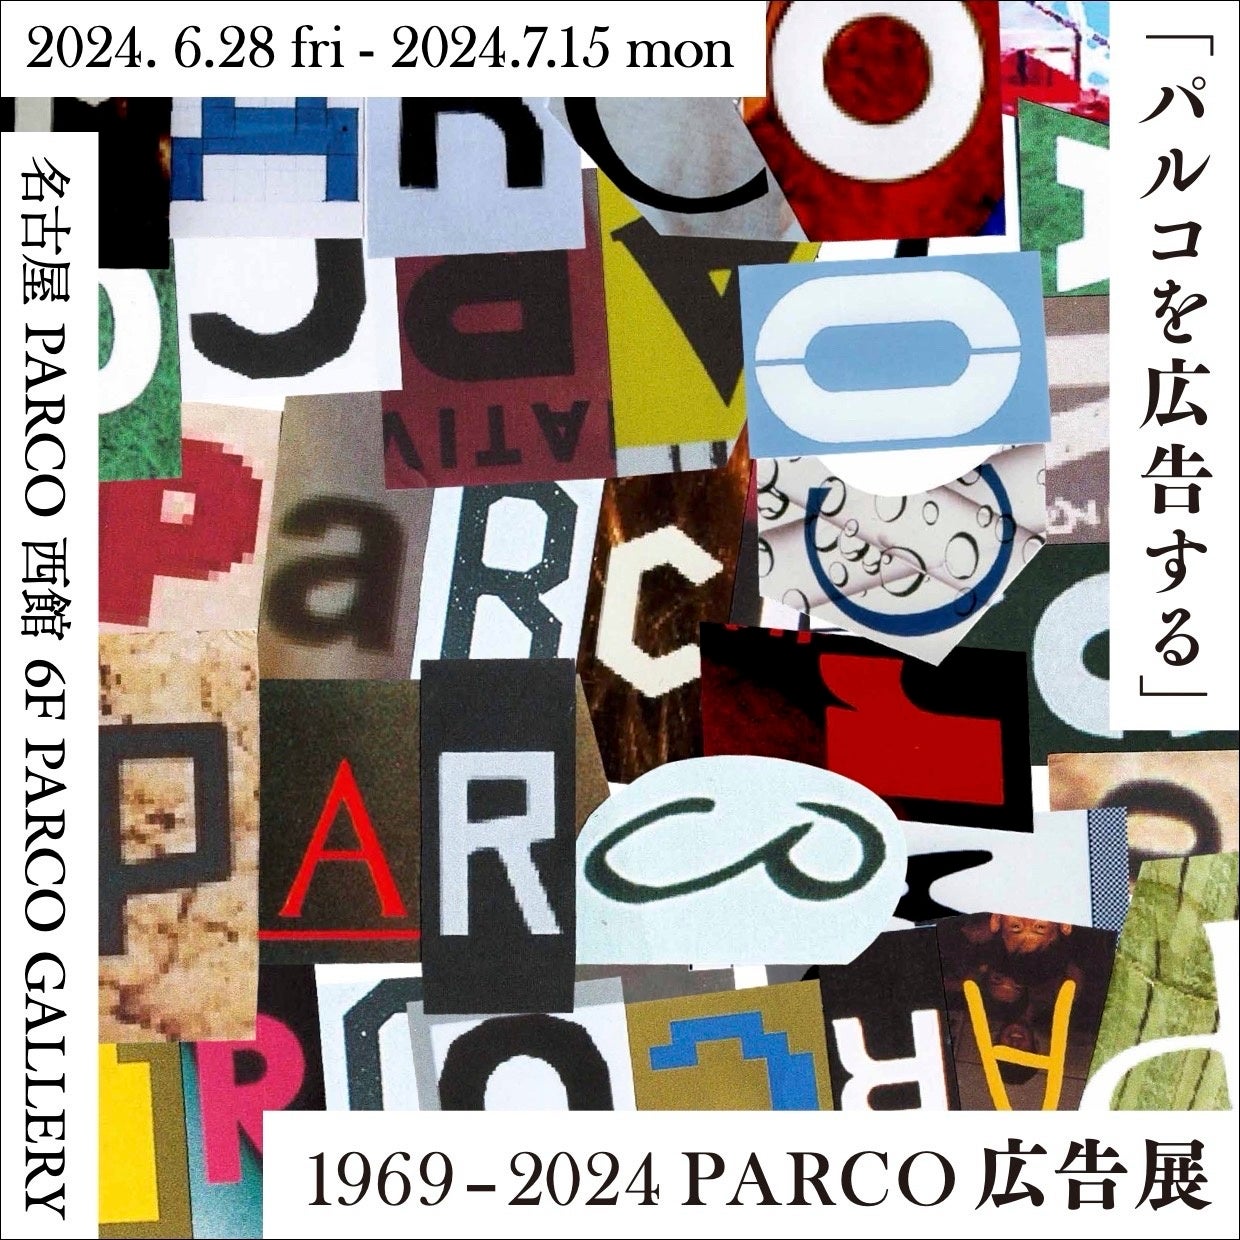 名古屋PARCO開業３５周年記念キャンペーン第１弾パルコの広告表現を通覧する展覧会を開催　“「パルコを広告す...